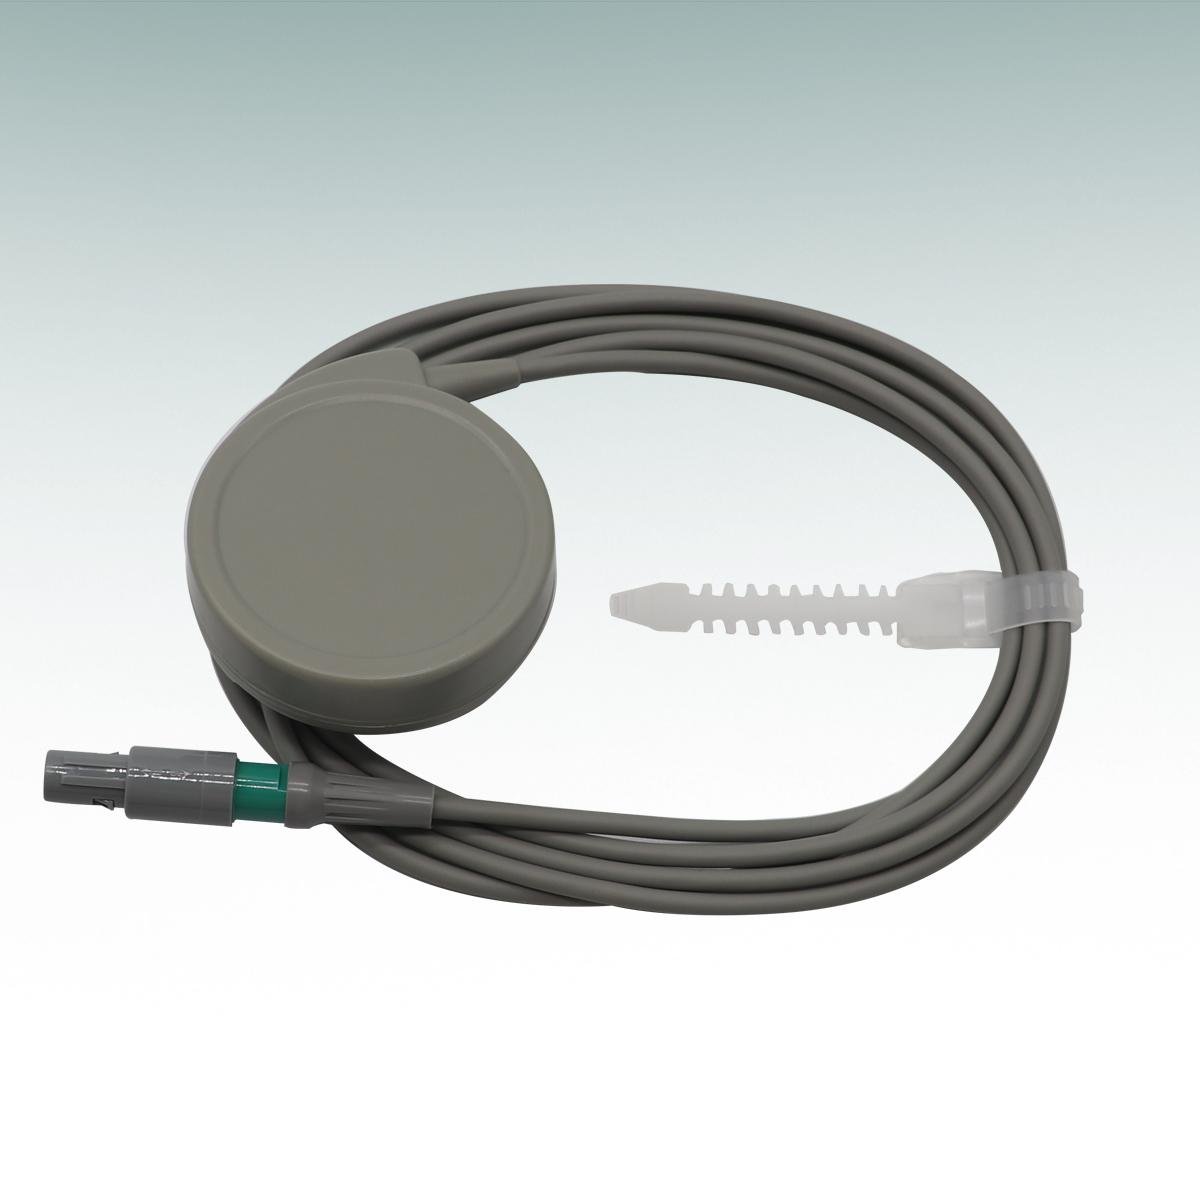 COMEN 5000C/5000E fetal monitor accessories 4/7 needles double slot probe  2